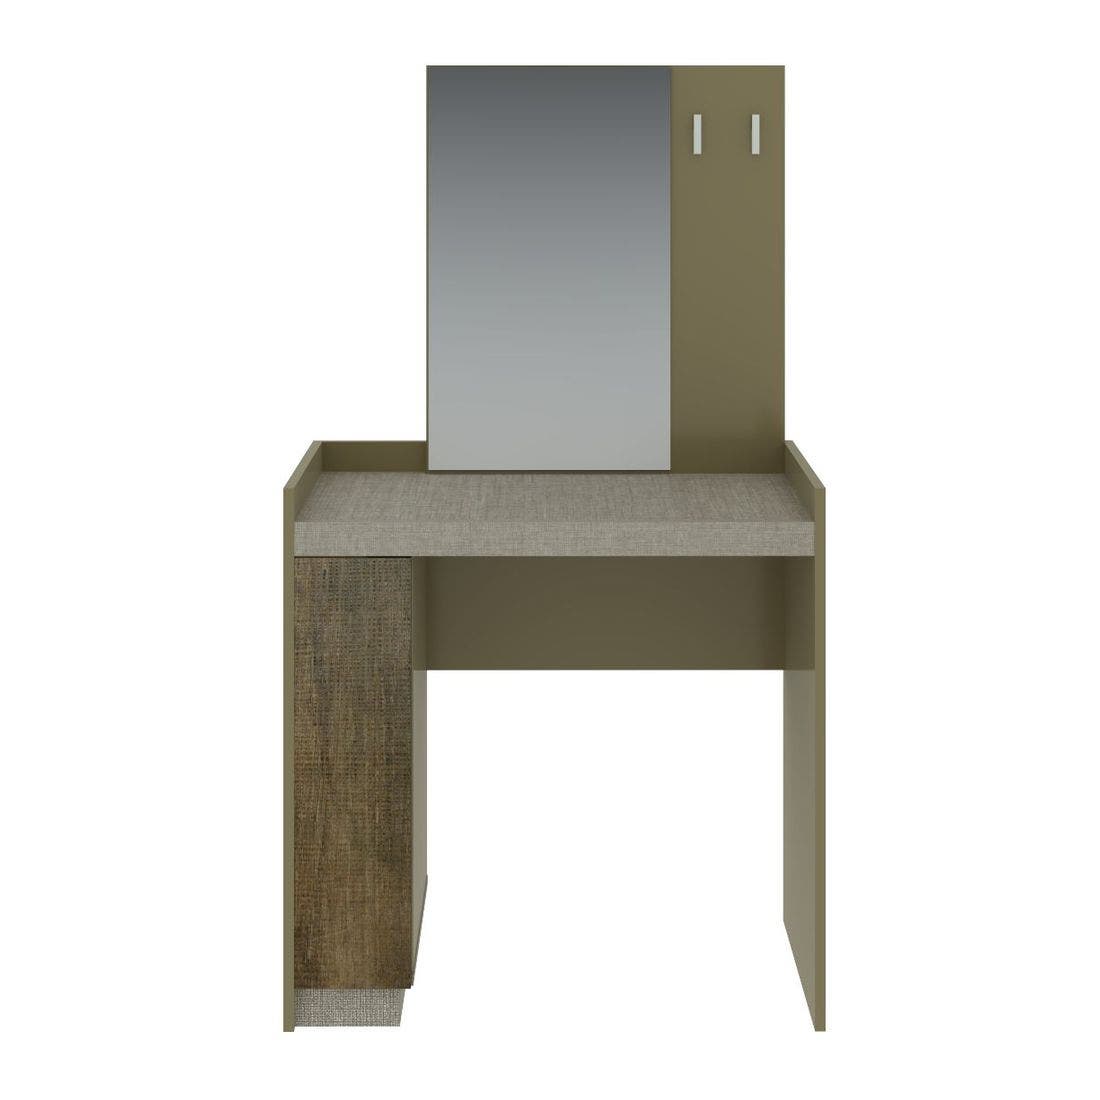 ชุดห้องนอน โต๊ะเครื่องแป้งแบบนั่ง รุ่น Econi สีสีน้ำตาลอ่อน-SB Design Square